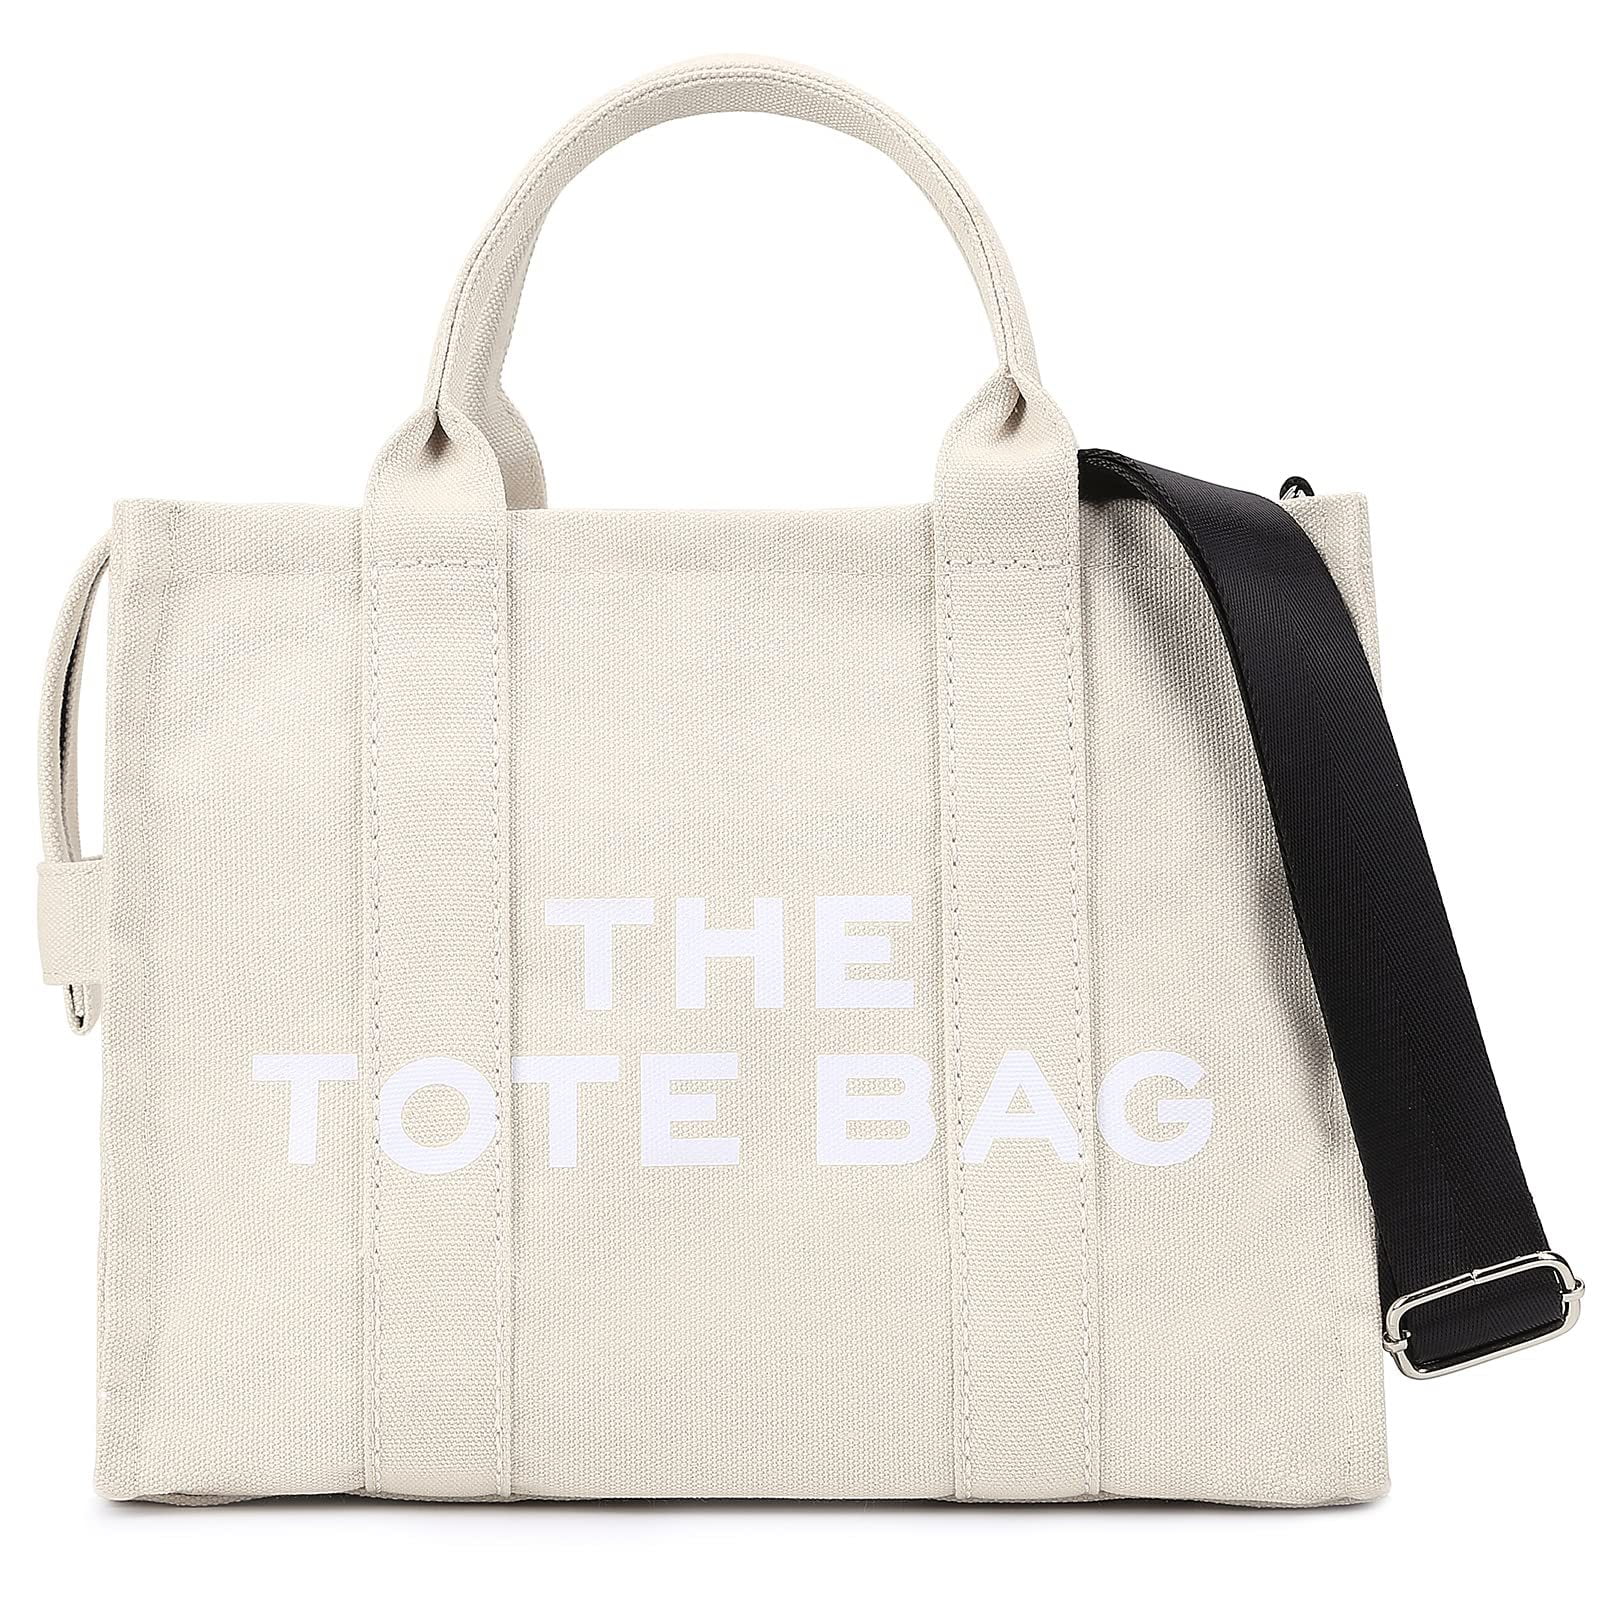 Topio Bag Tote Bag for Women Zipper Bag Canvas Bag Cute Bag - Walmart.com